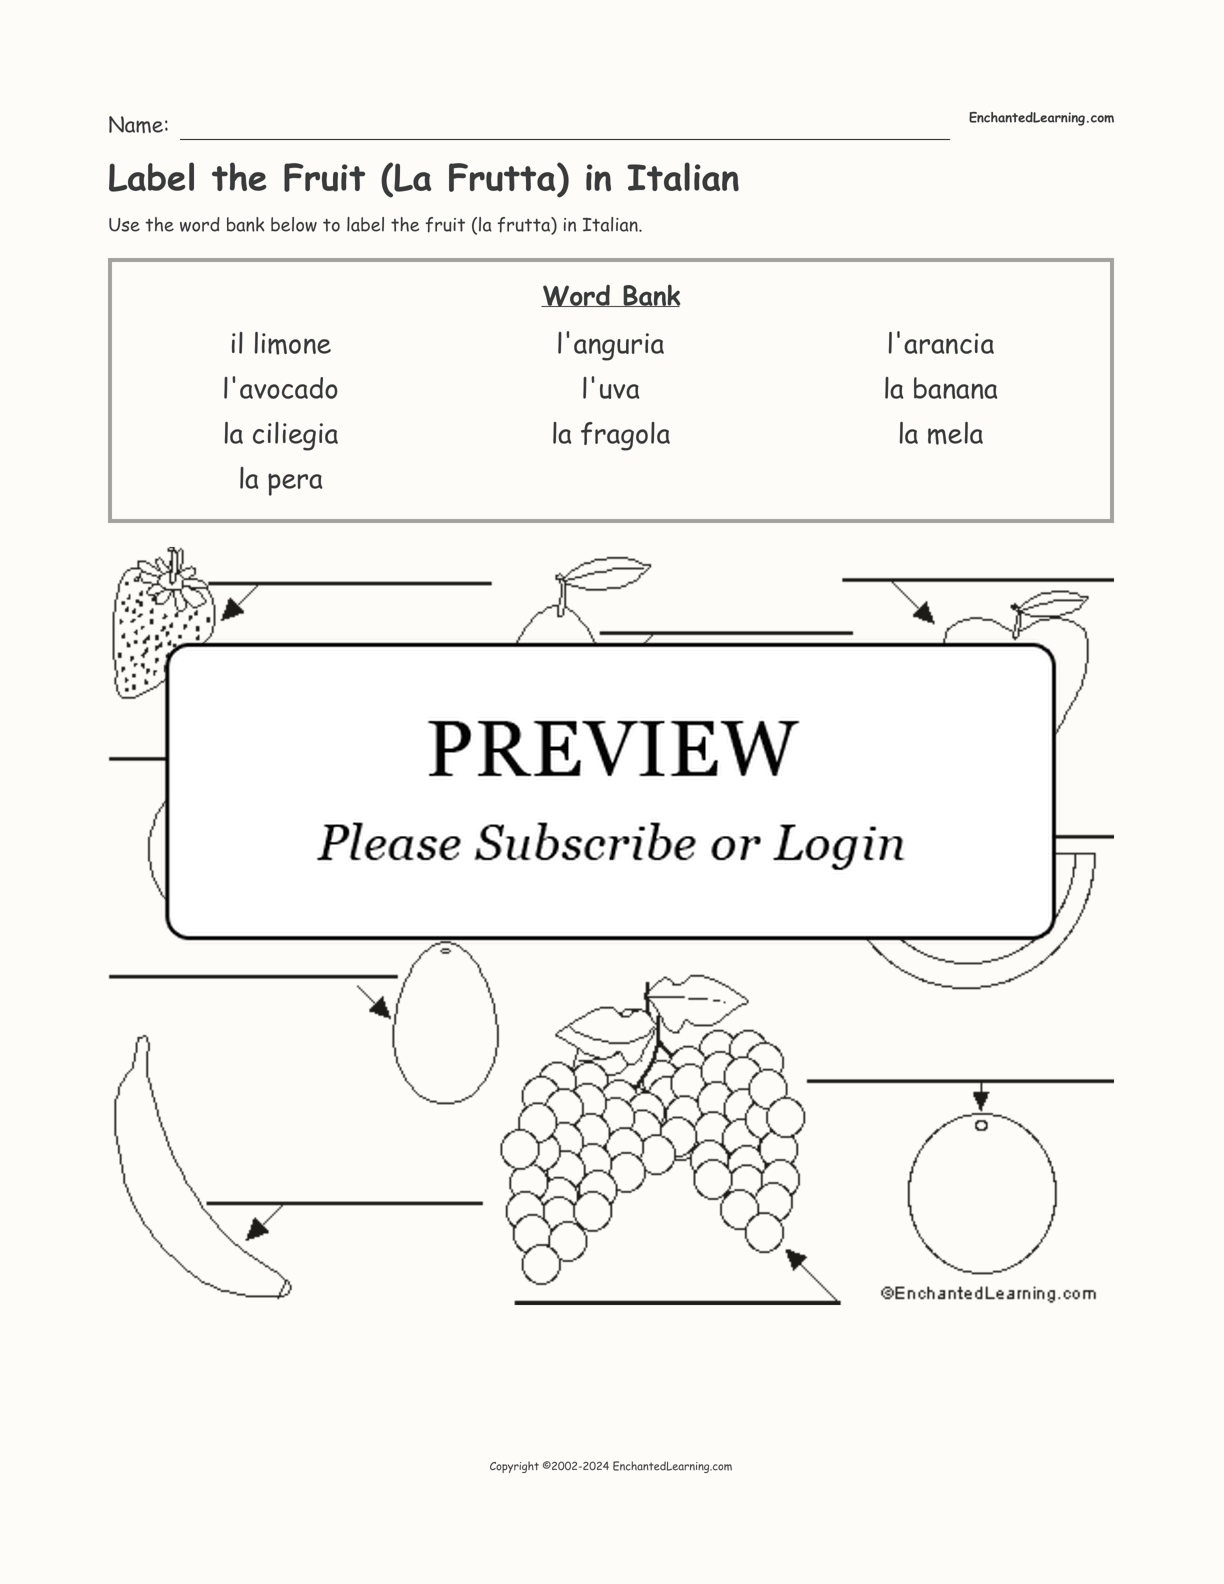 Label the Fruit (La Frutta) in Italian interactive worksheet page 1